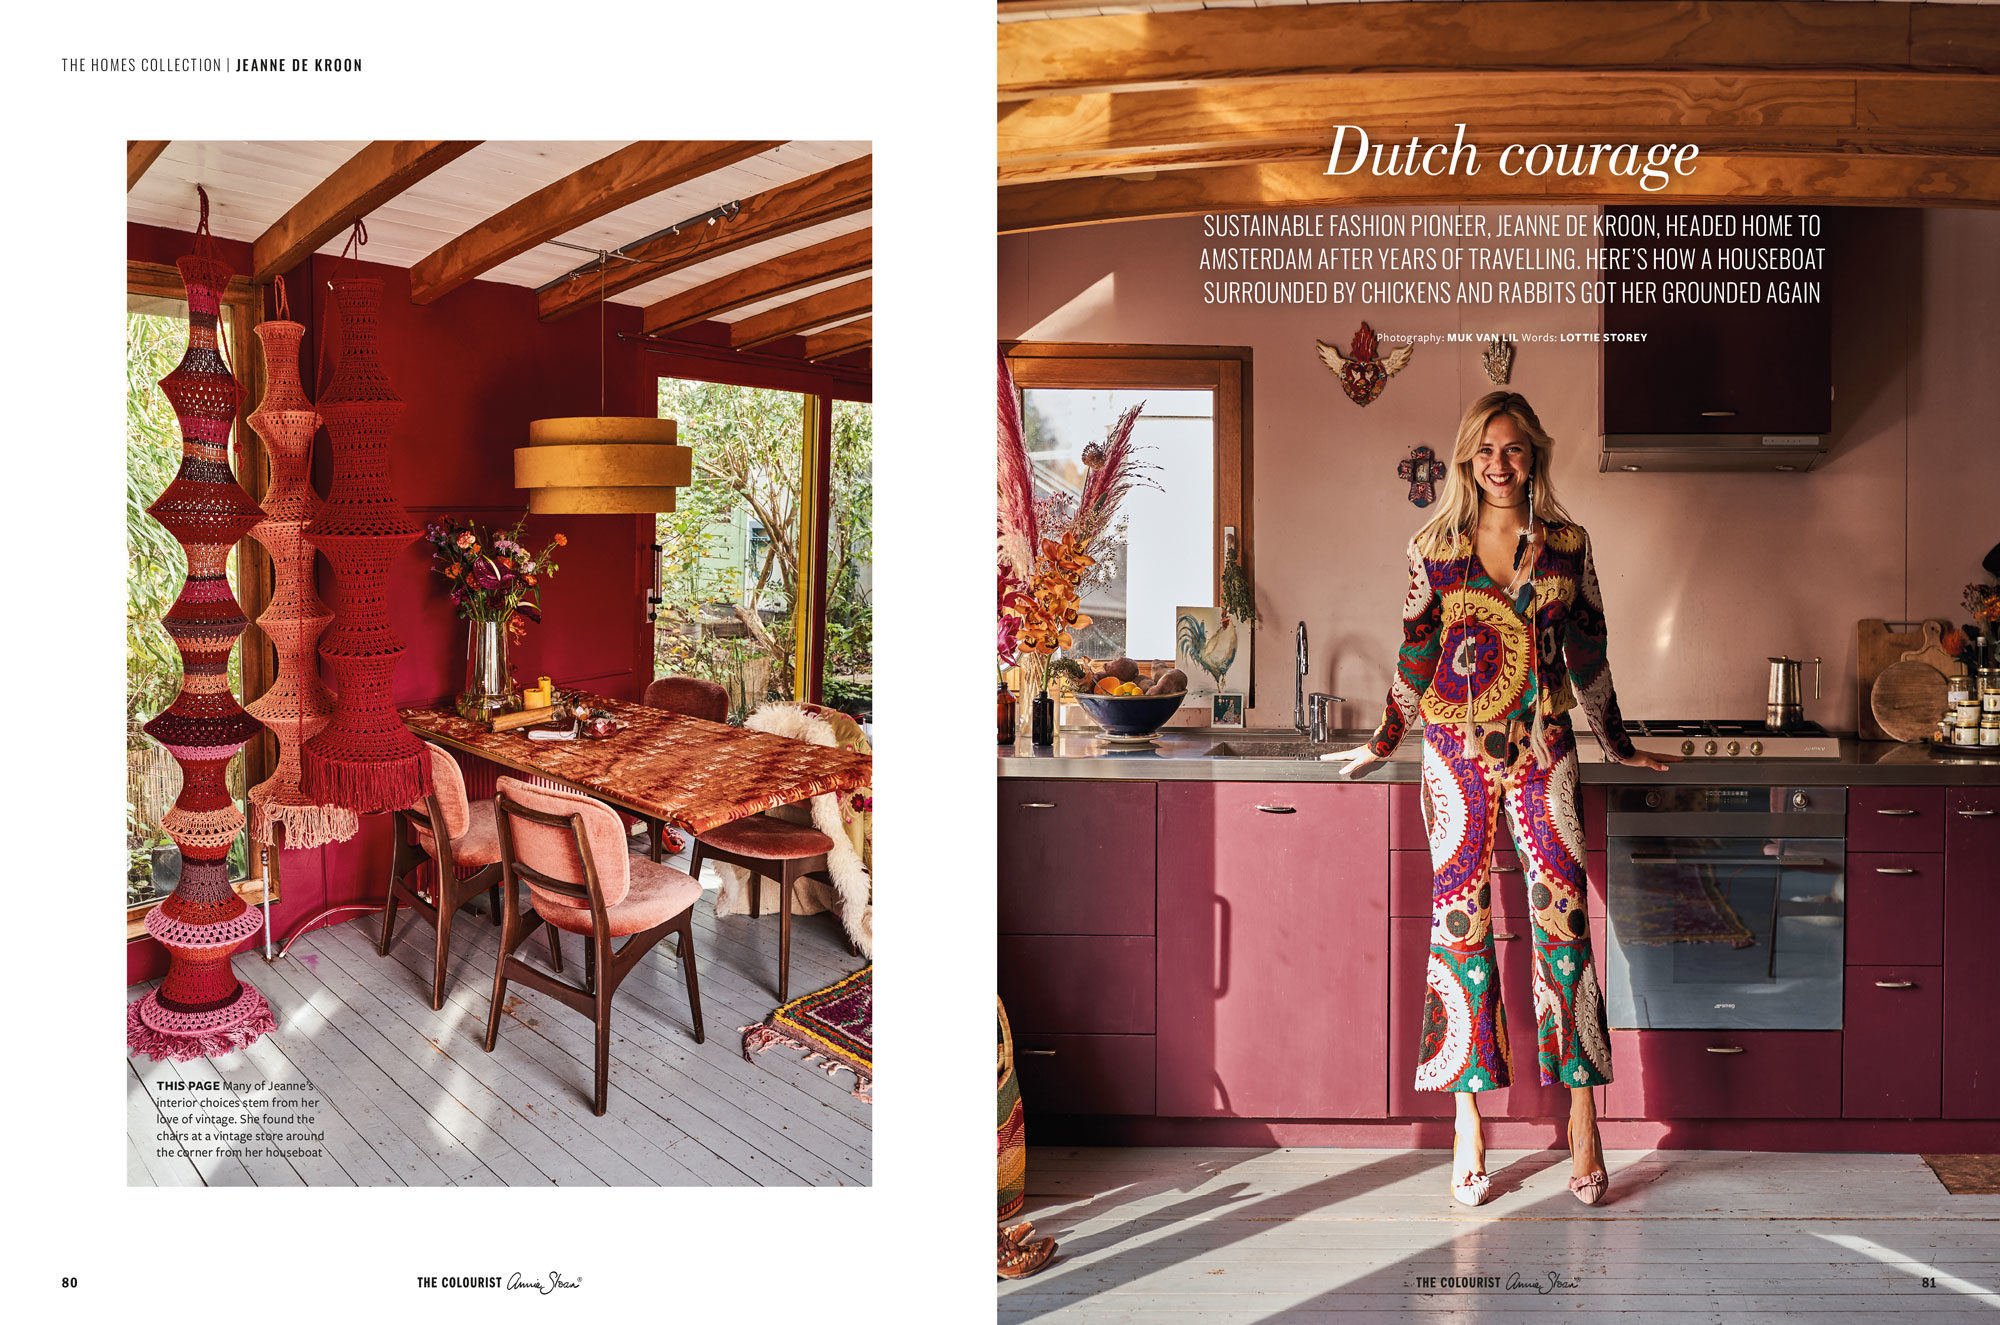 časopis o dizajne a bývaní Annie Sloan The Colourist 9